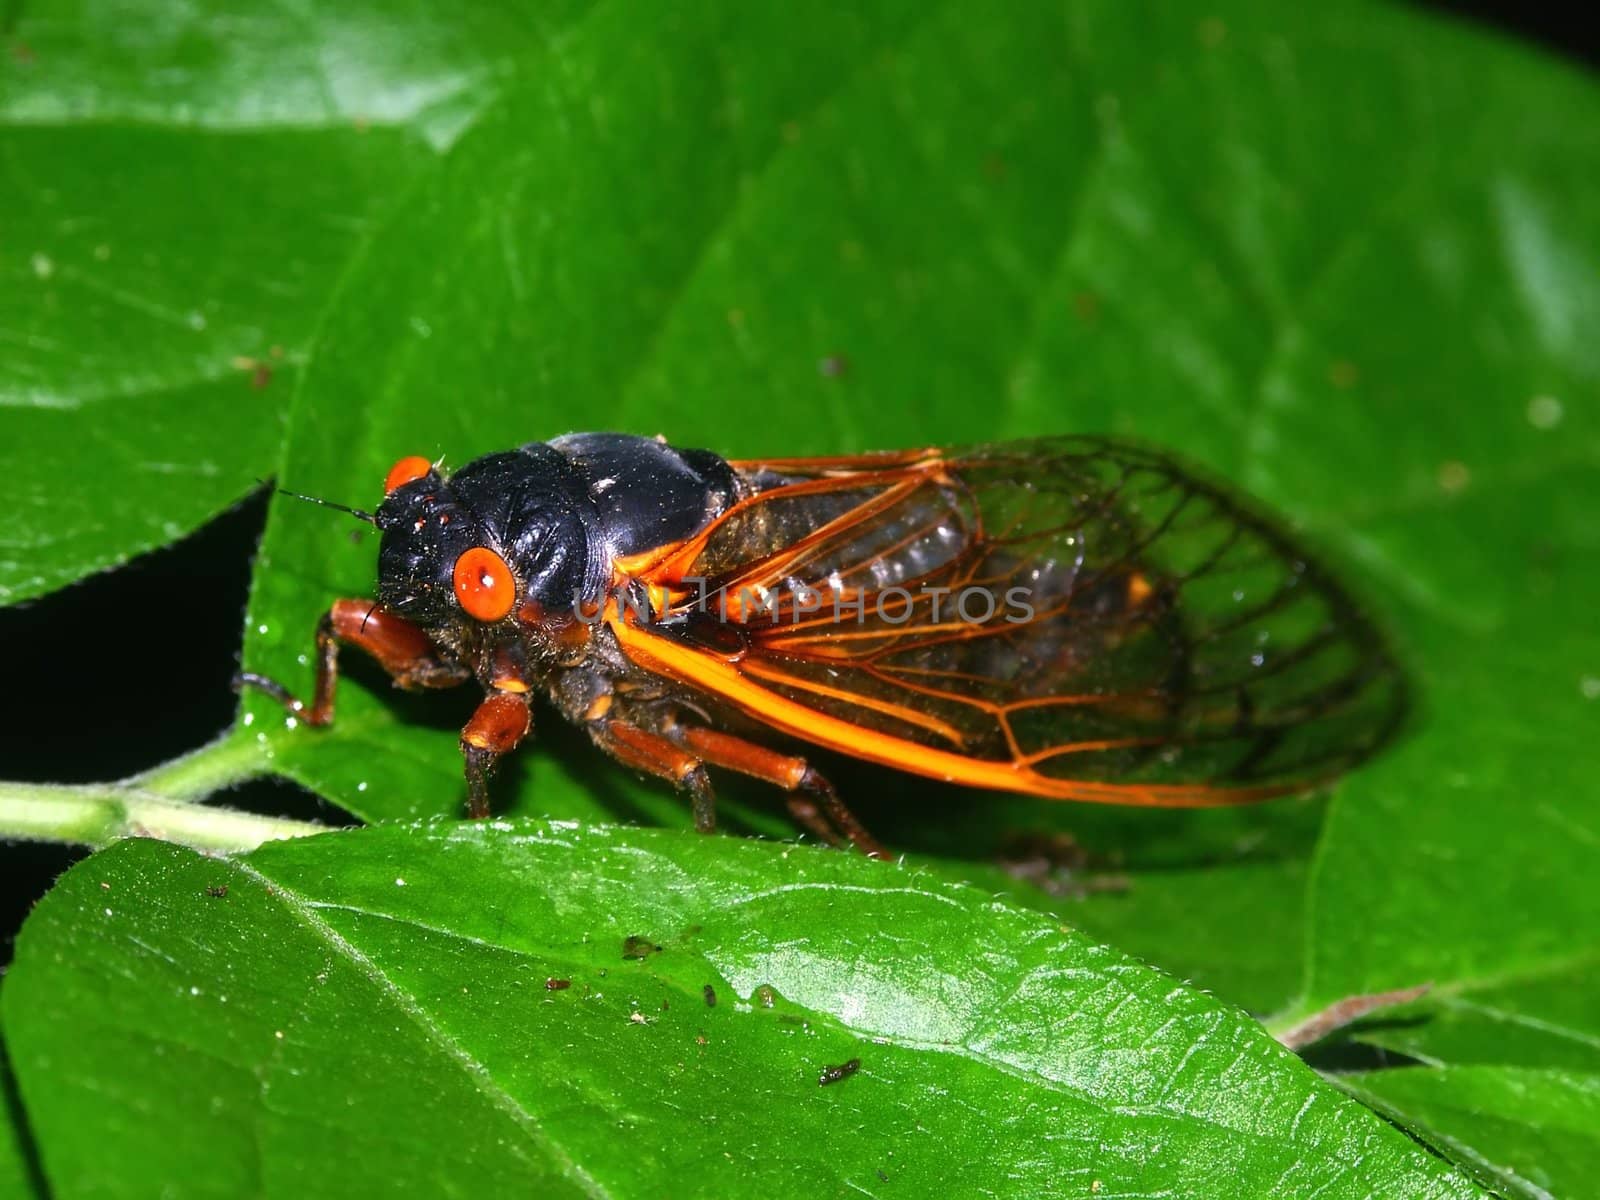 Periodical Cicada (Magicicada septendecim) by Wirepec